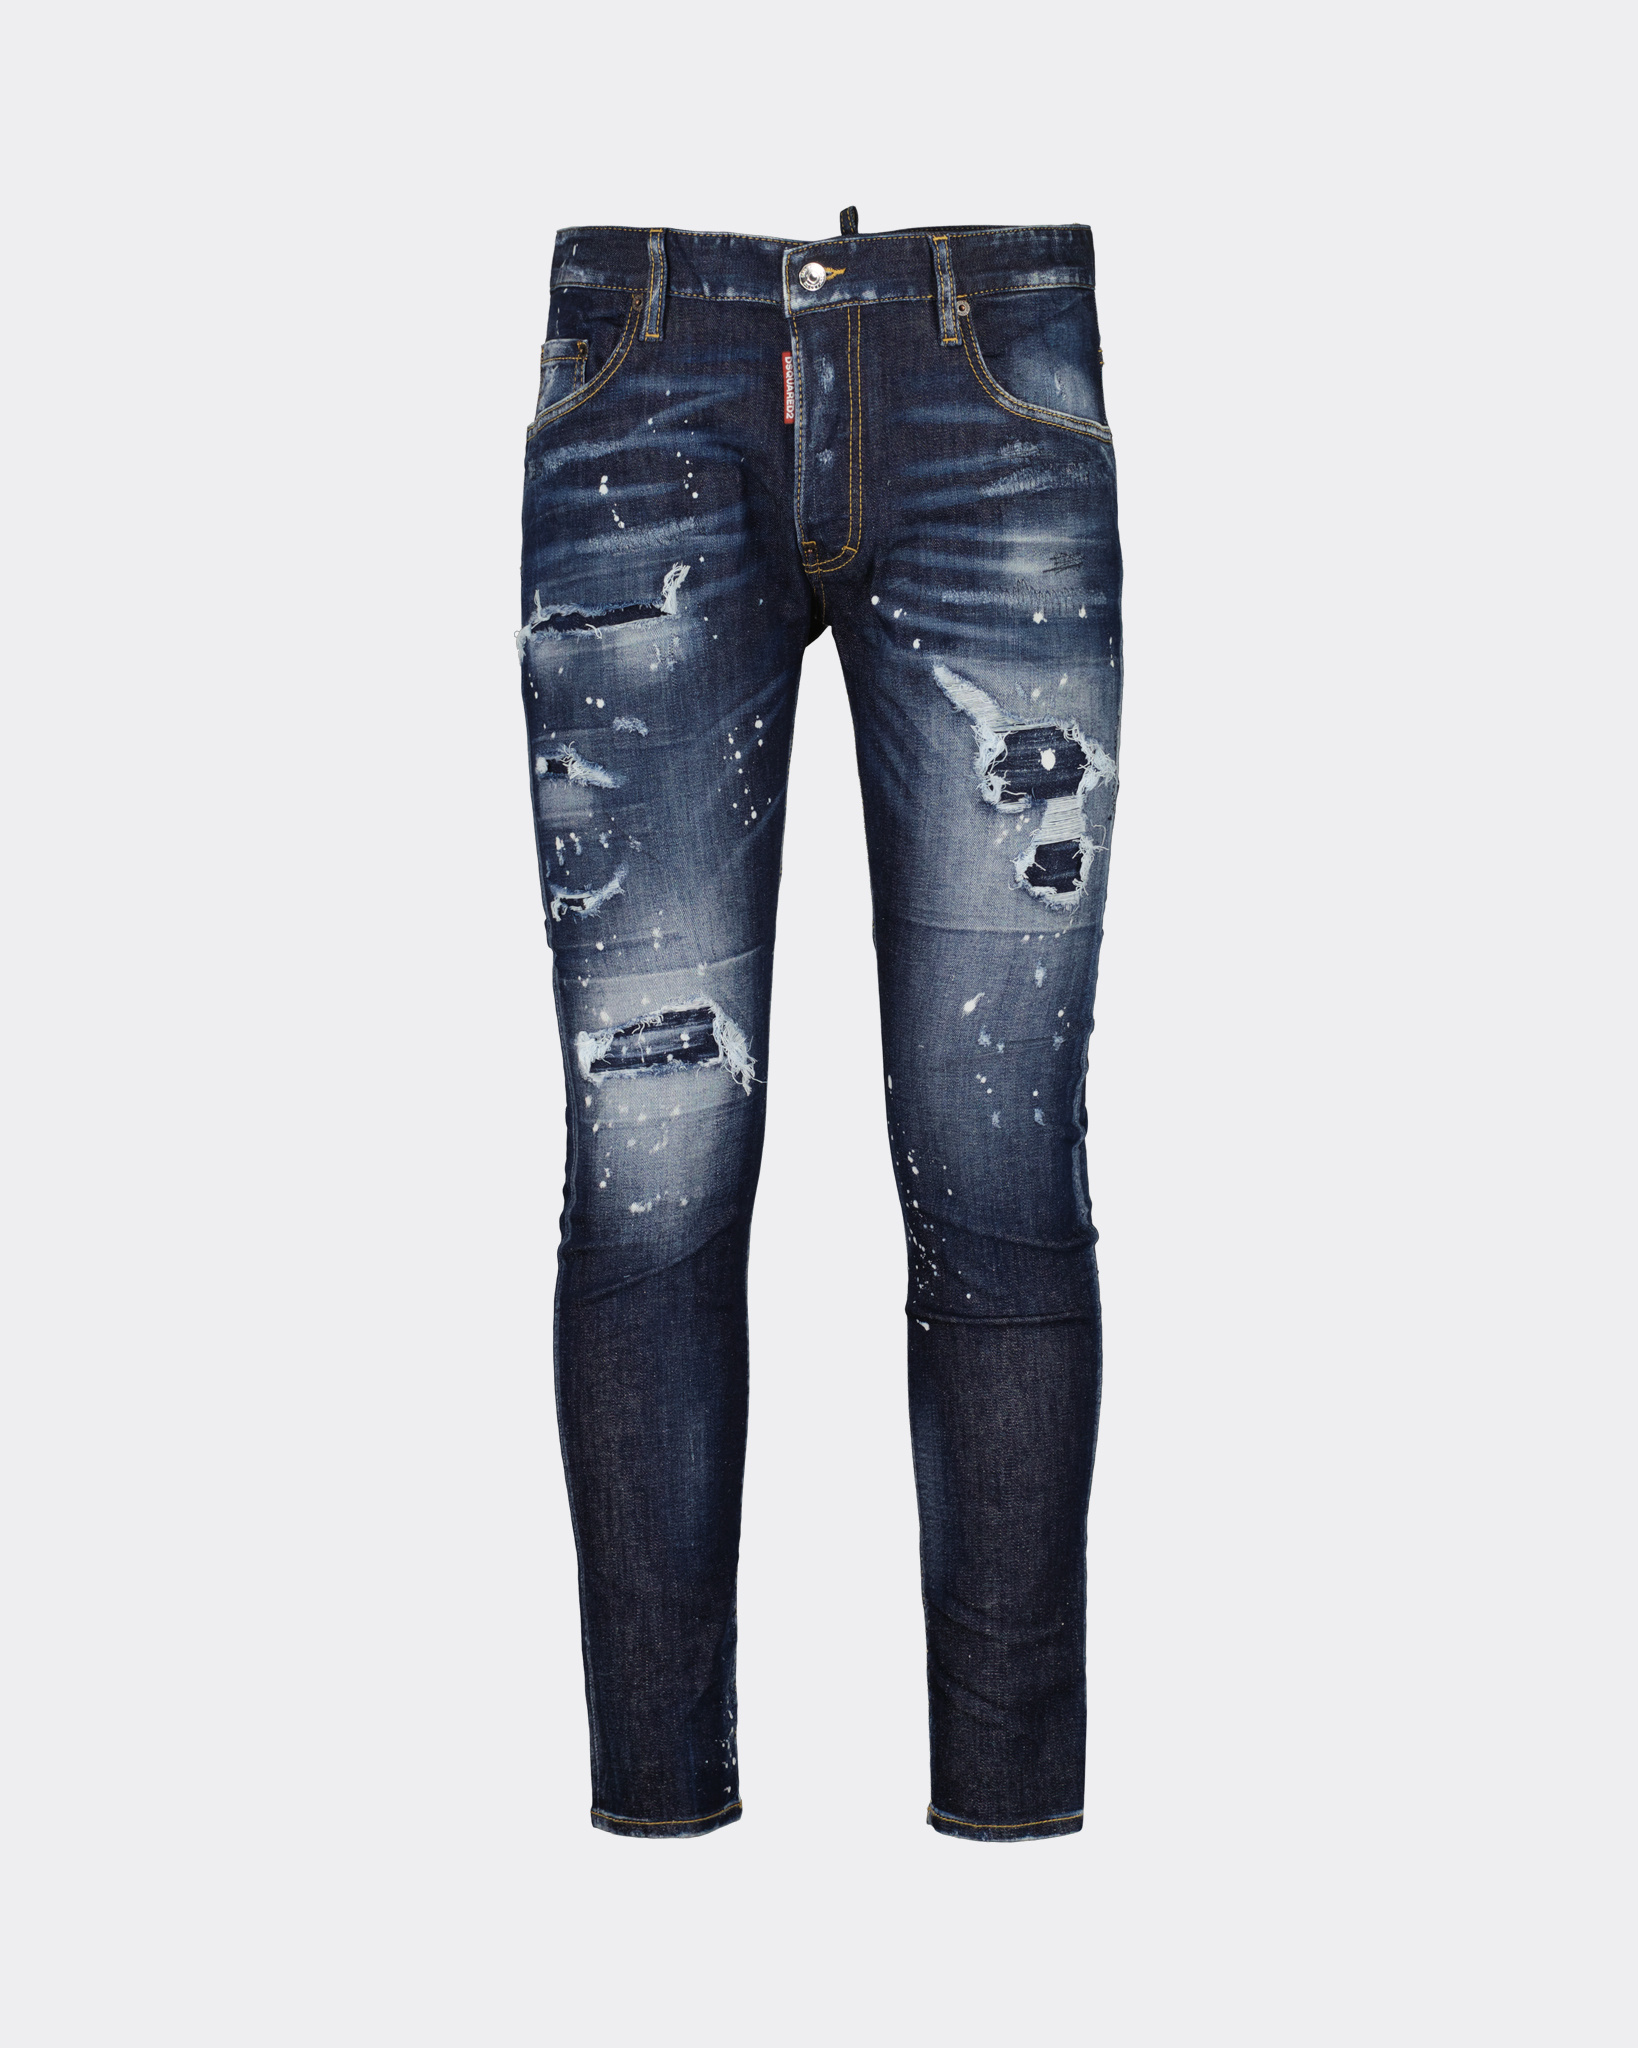 Overvloed fee Teken Dsquared2 Super Twinky Jeans Blauw - Beachim